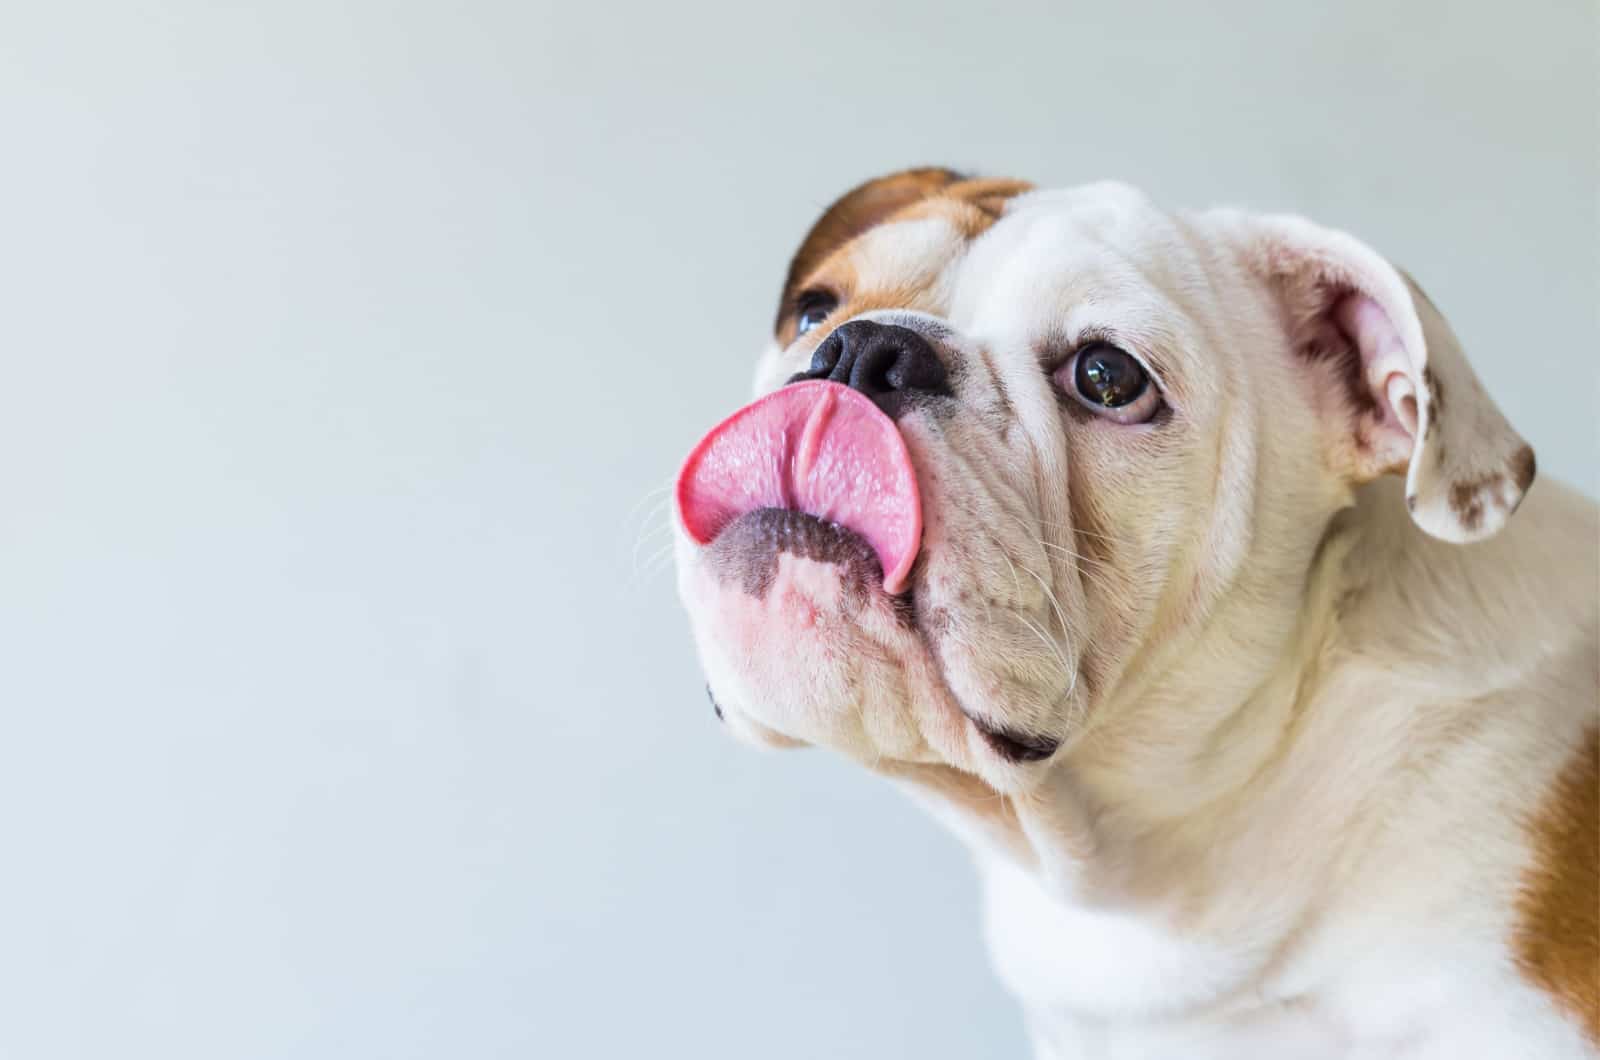 bulldog licking his mouth